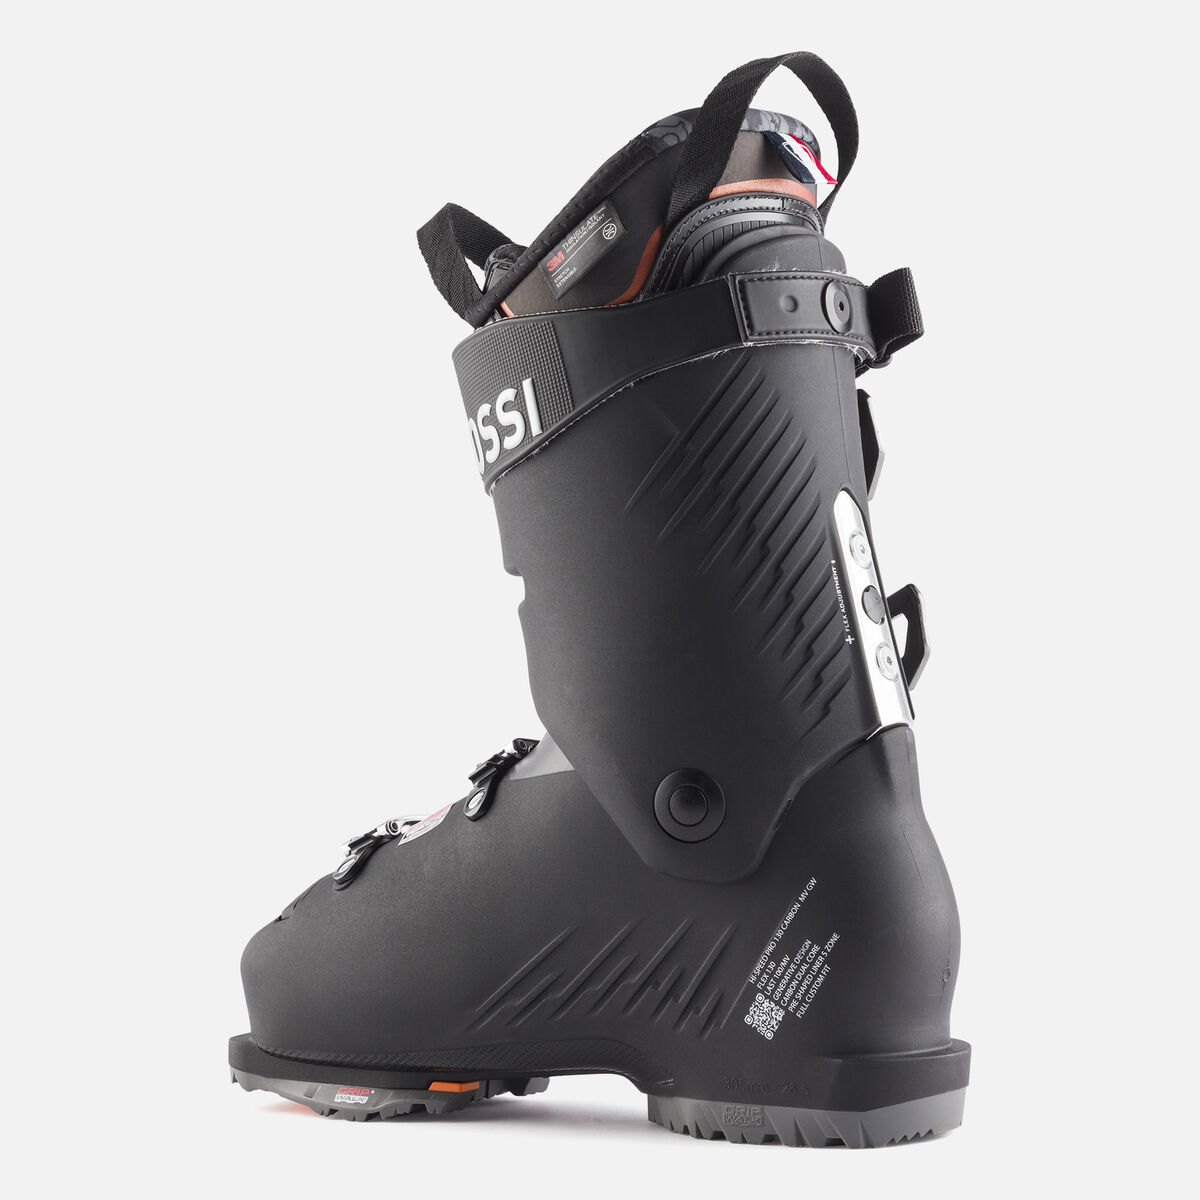 Chaussures de ski de Piste homme HI-Speed Pro 130 CA MV GW